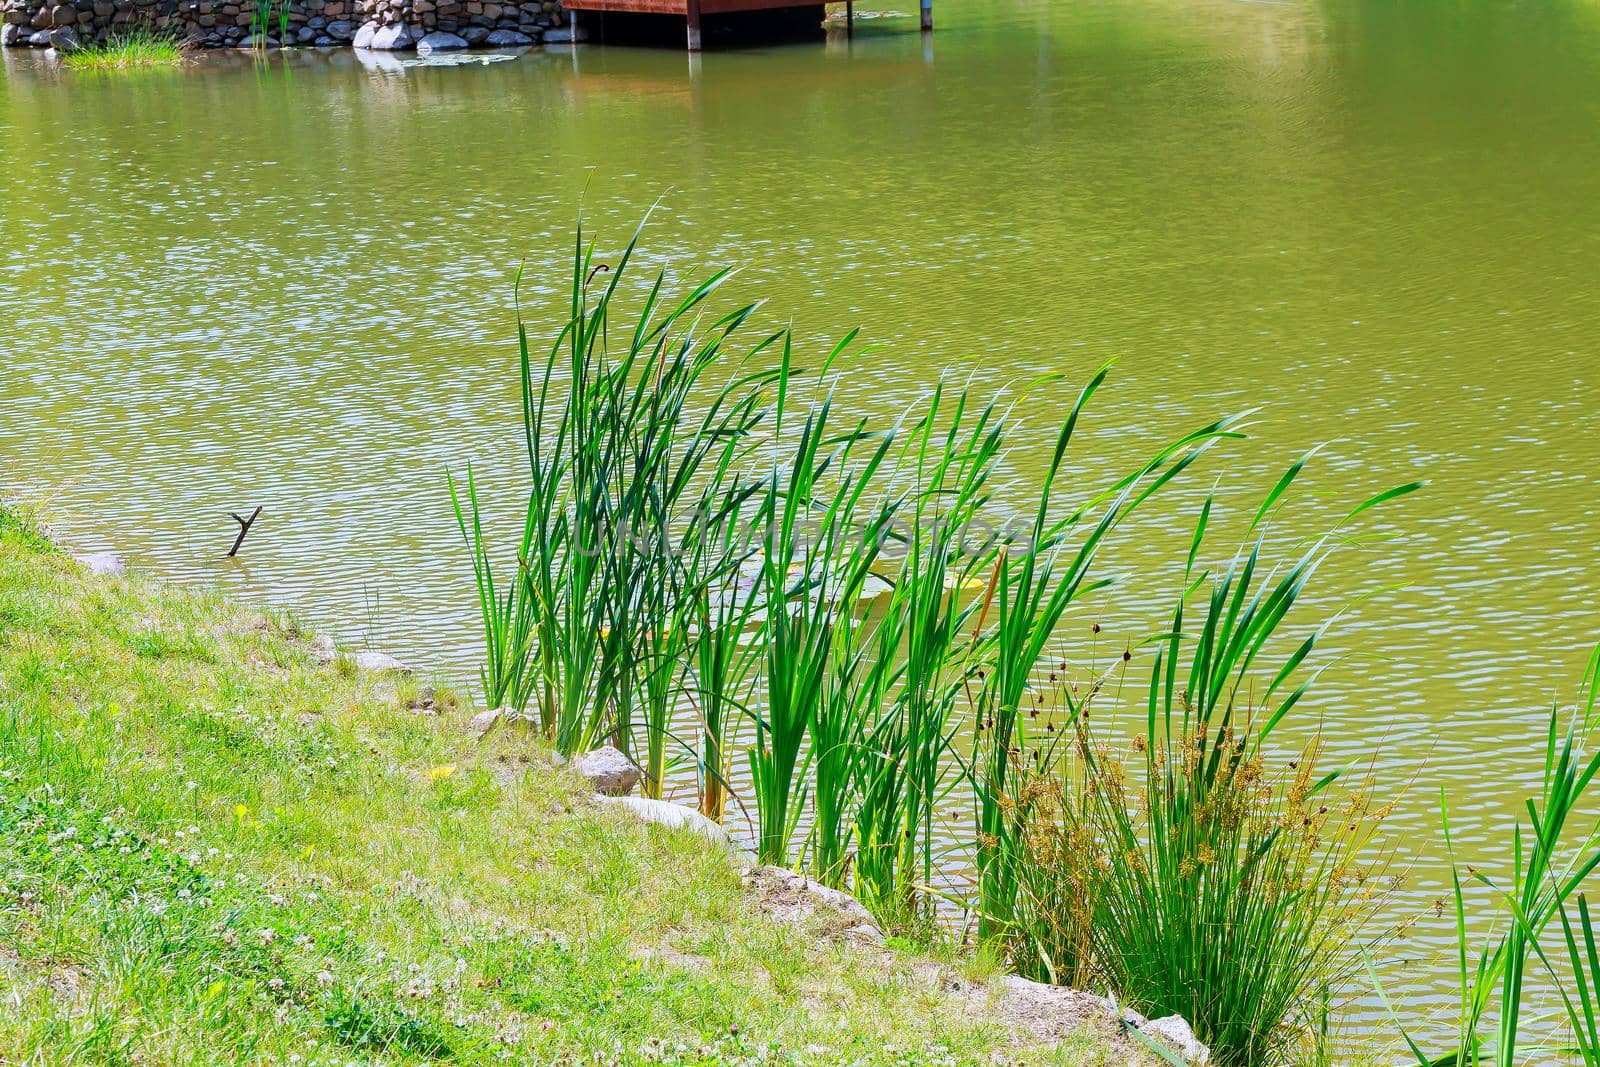 reeds at the lake shore, selective focus reeds lake